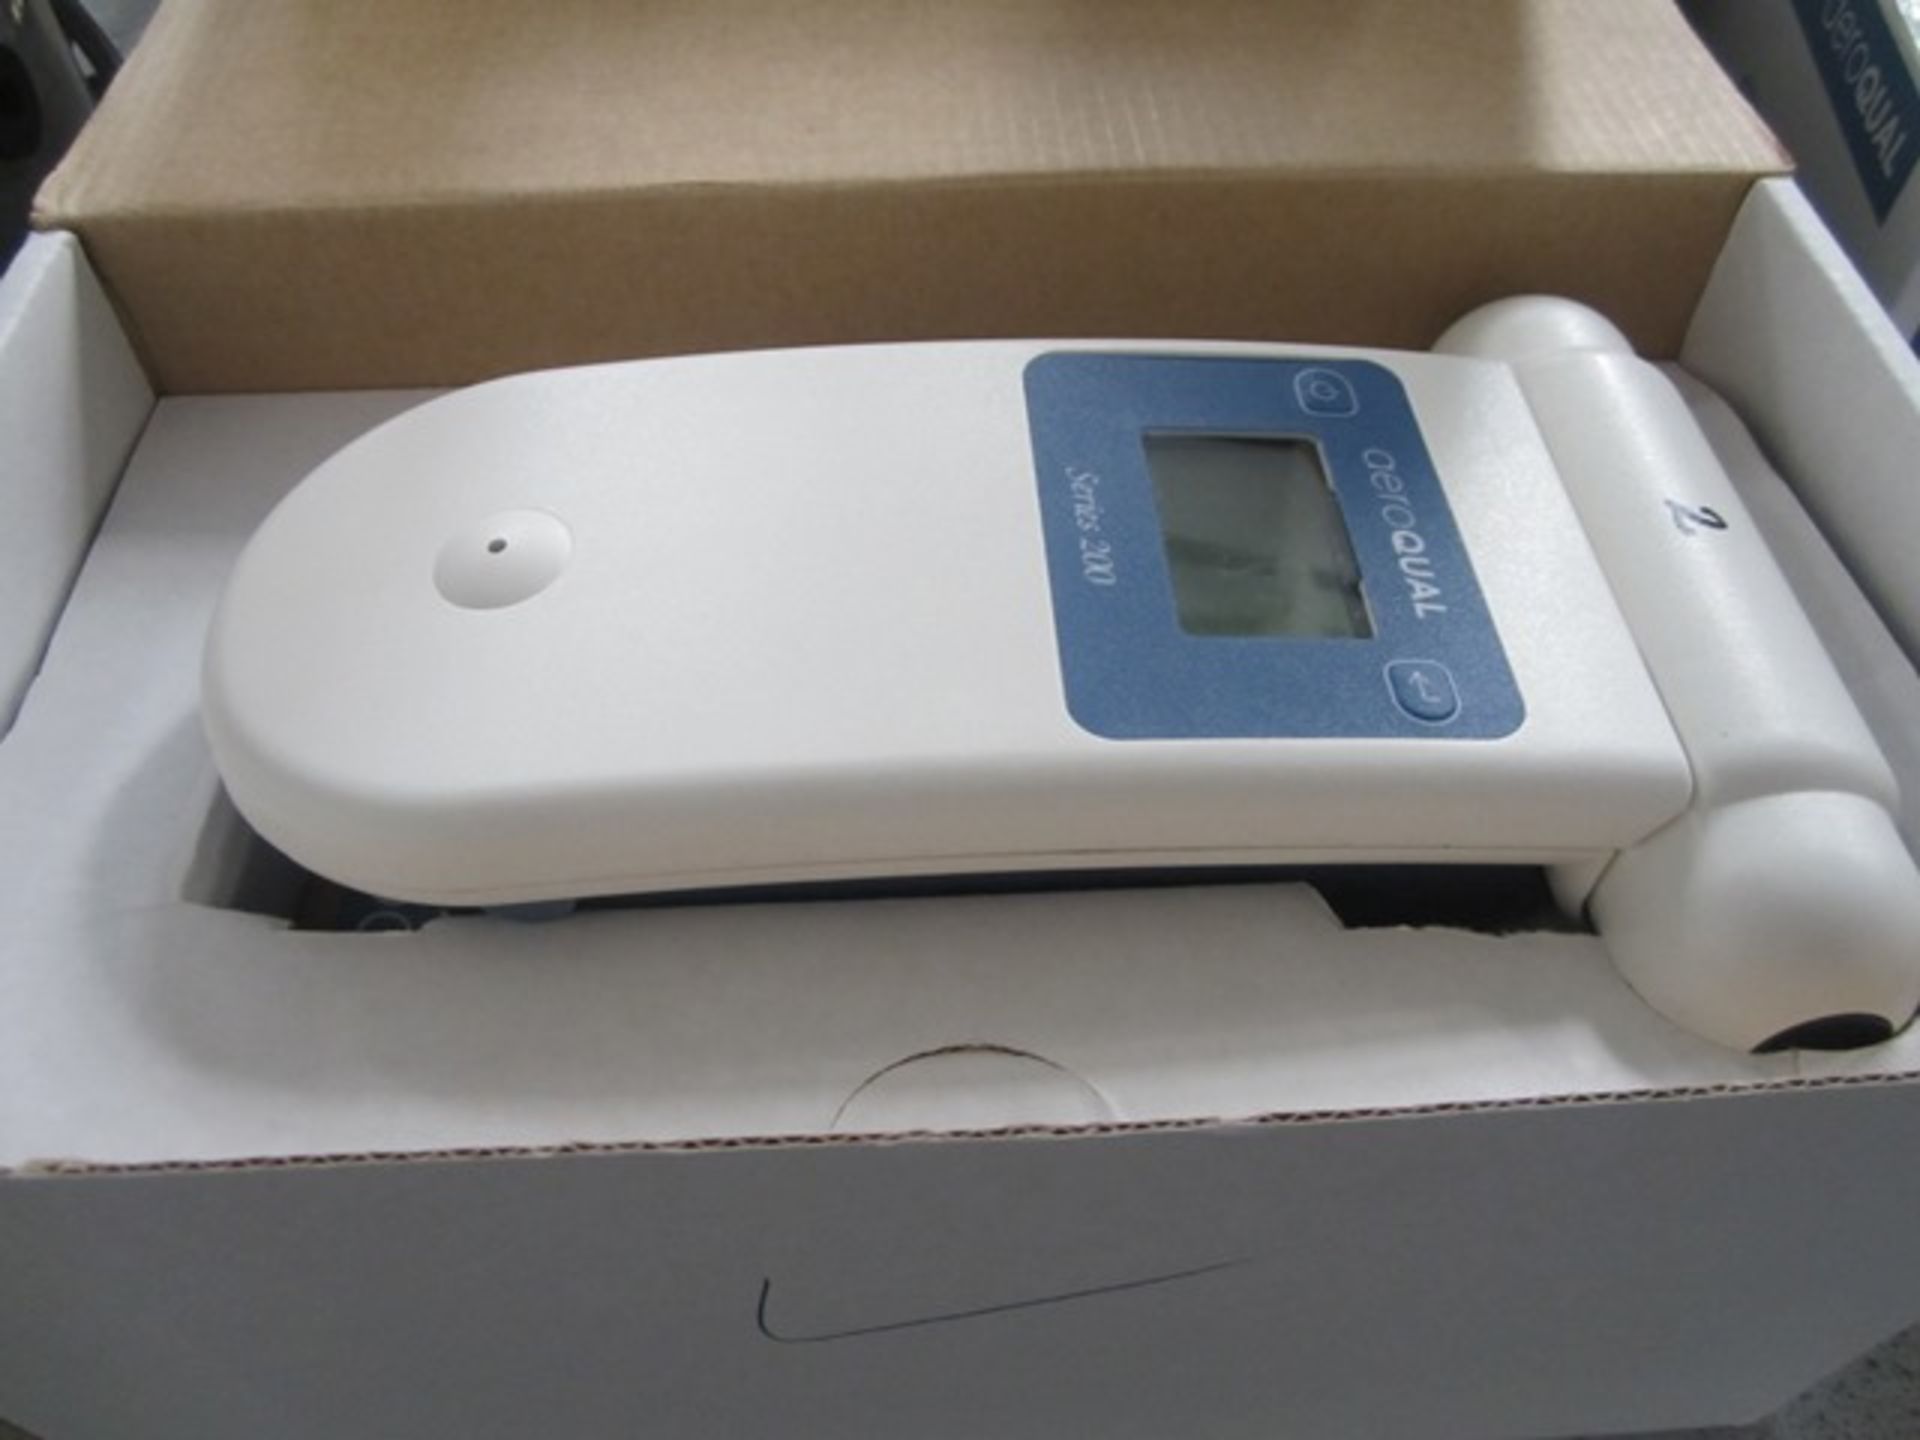 Aeroqual Series 200 ozone monitor (height 50mm x width 75mm x depth 170mm)